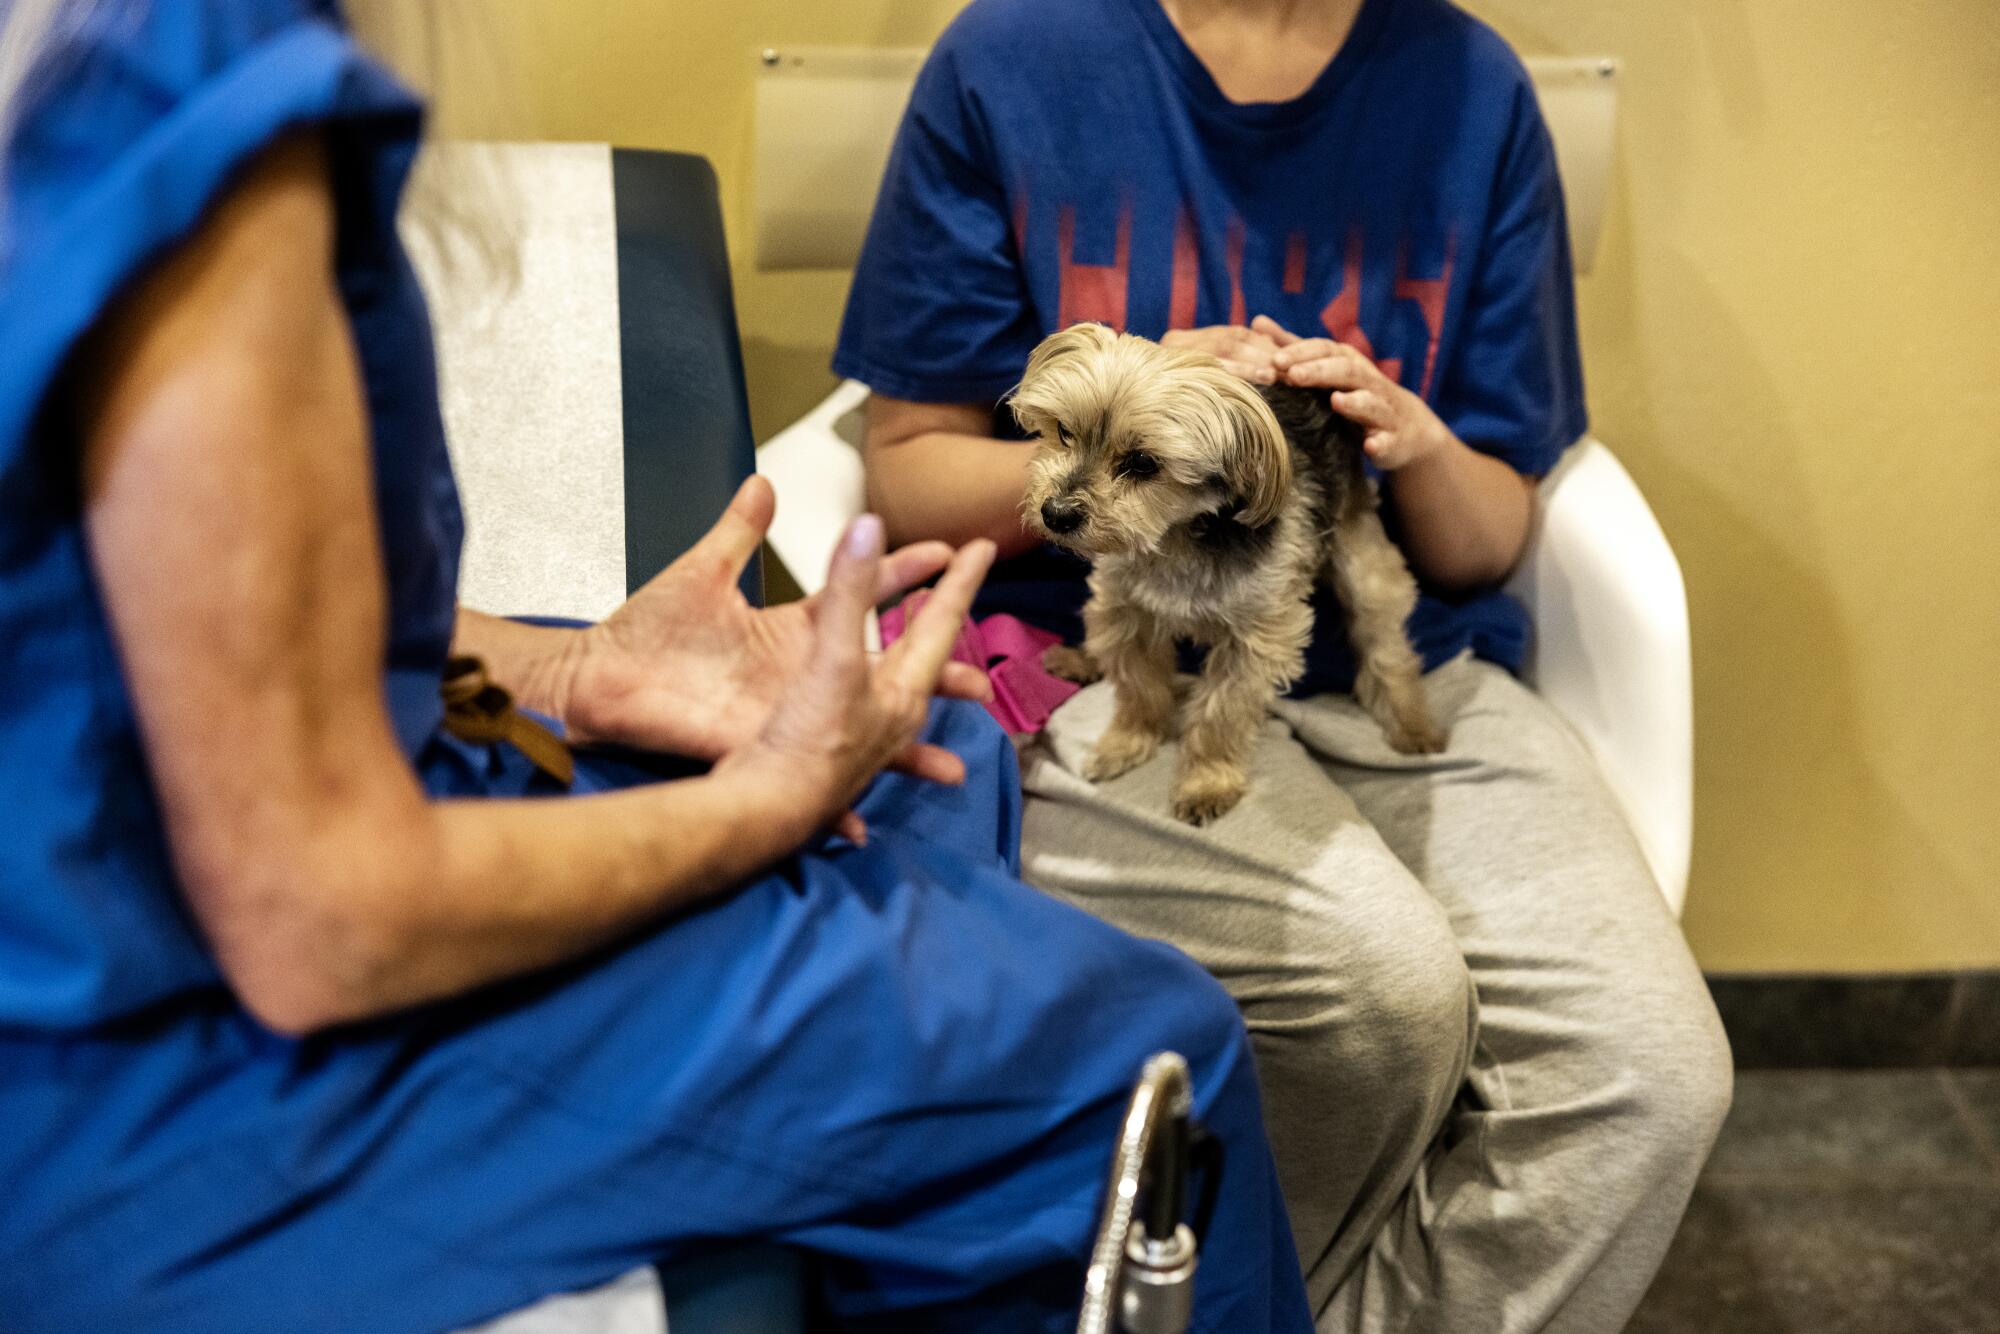 一位来自菲尼克斯的 26 岁患者在检查室里中风了支持犬 Scooter，芭芭拉·齐普金 (Barbara Zipkin) 医生正在讨论她的选择。 